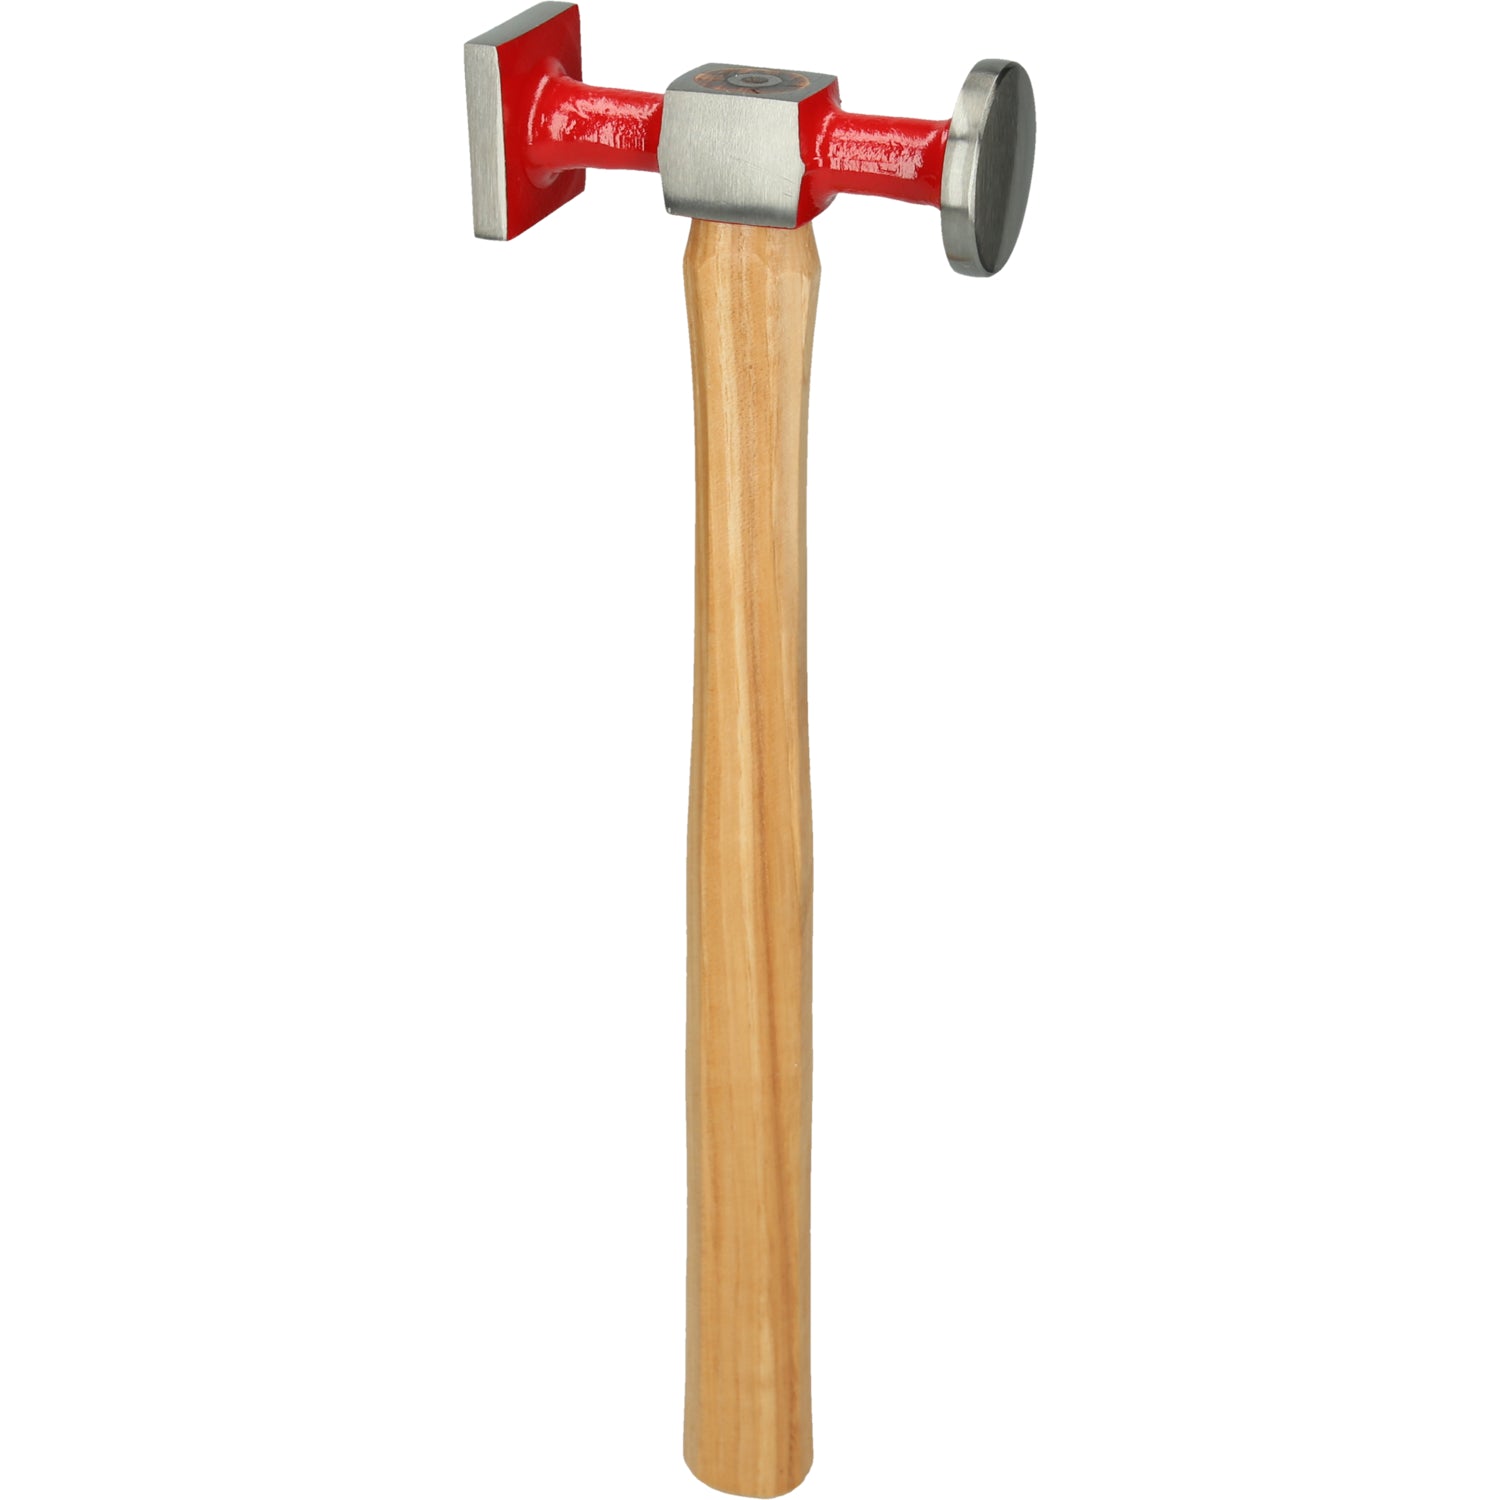 Karosserie-Standard-Hammer, groß rund/eckig/gewölbt, 325mm